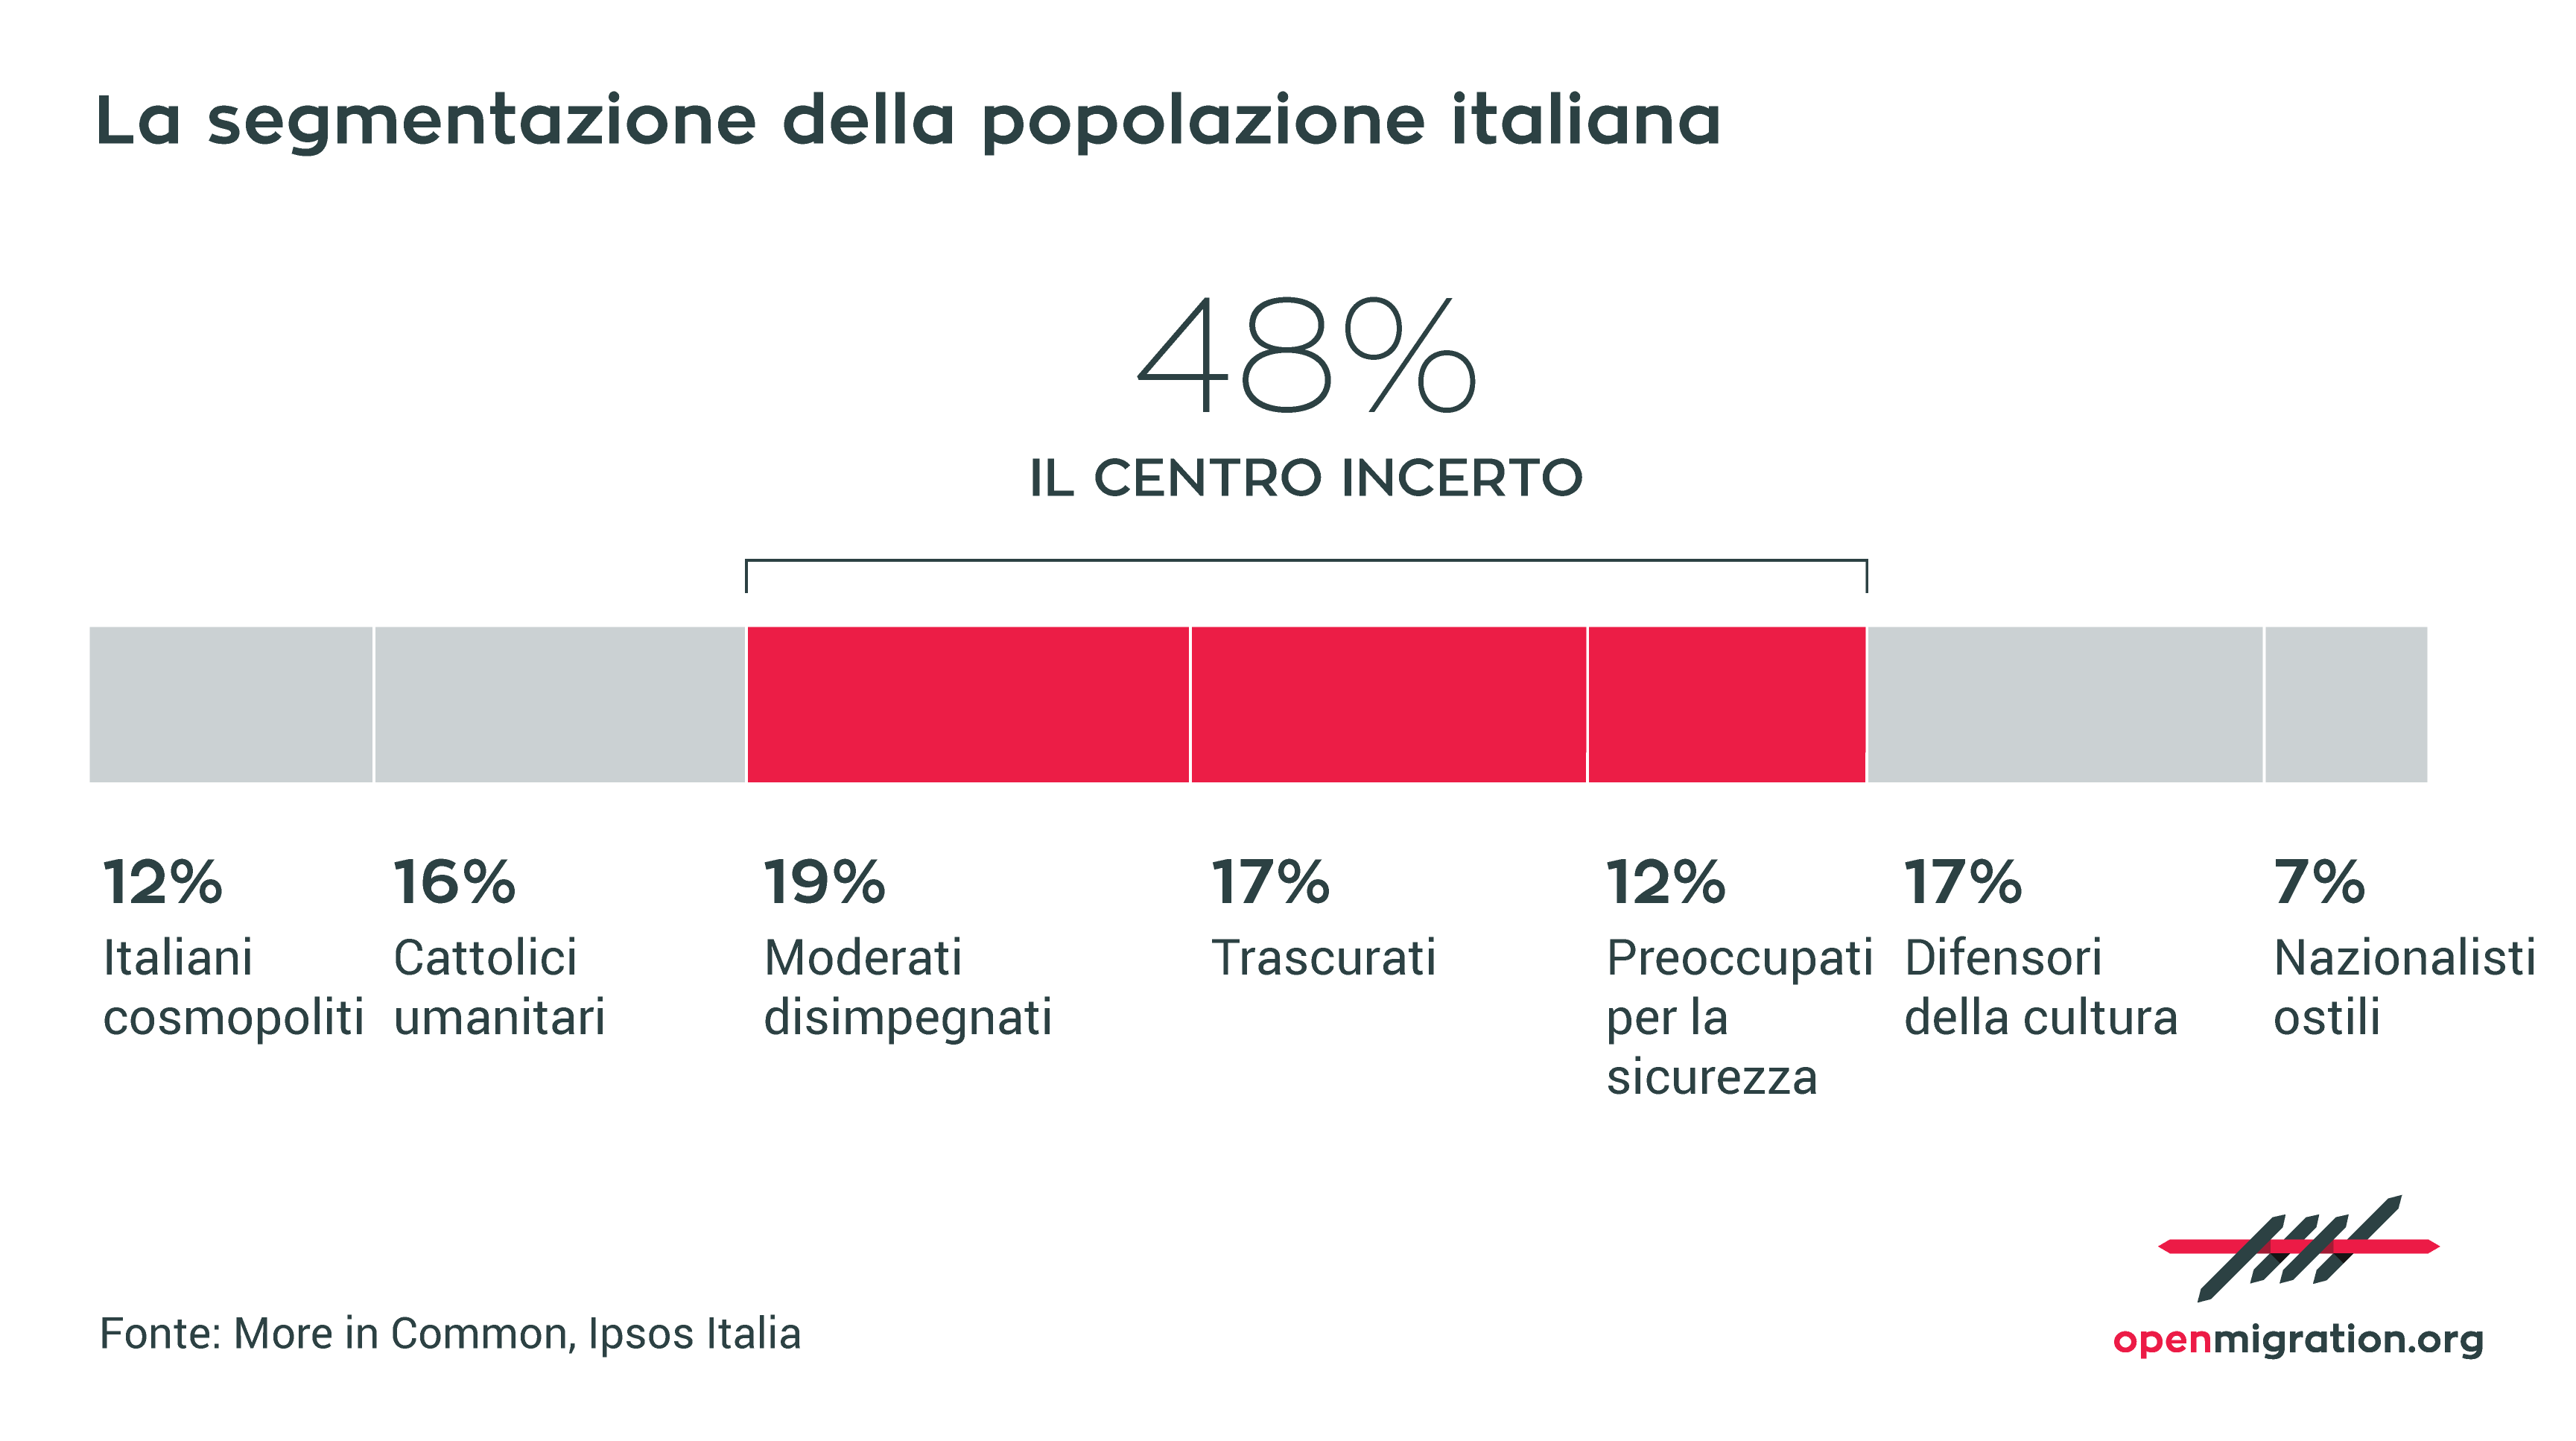 La segmentazione della popolazione italiana